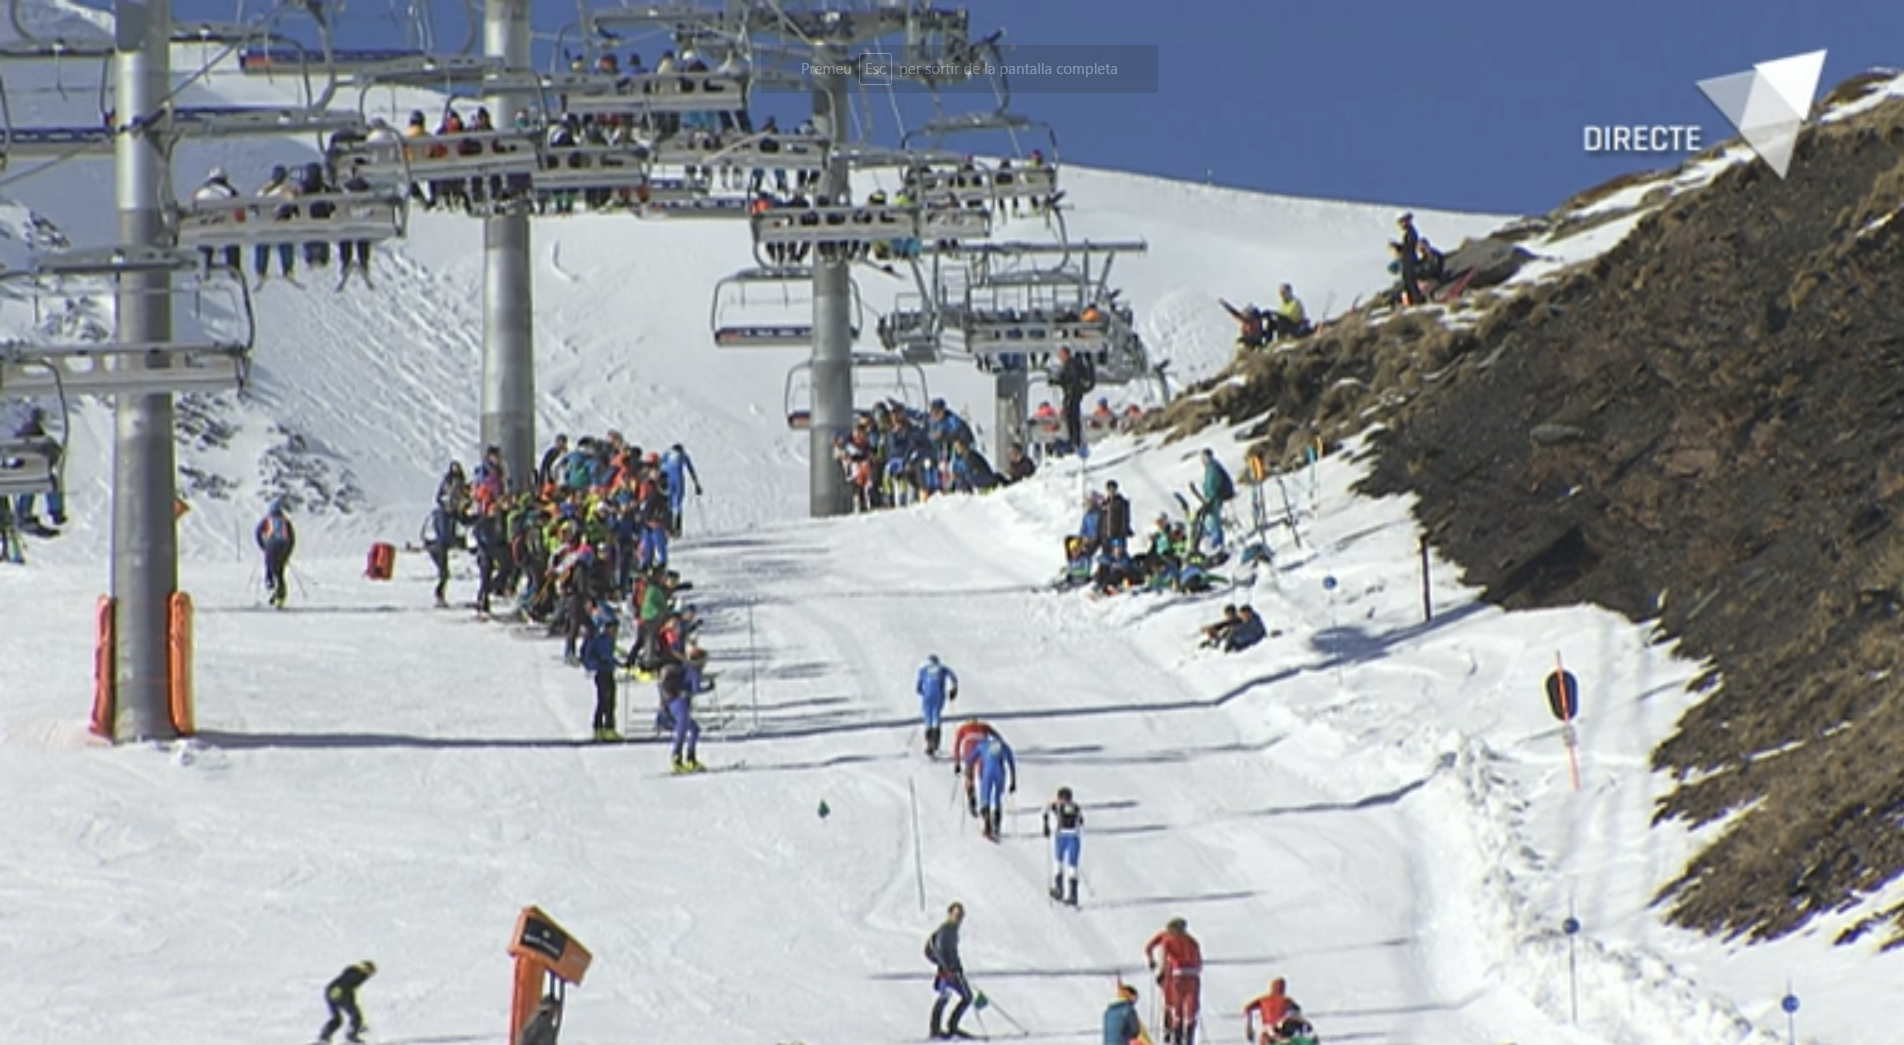 Programa especial curses verticals de la Copa del Món d'esquí de muntanya Font Blanca 2018 - segona part